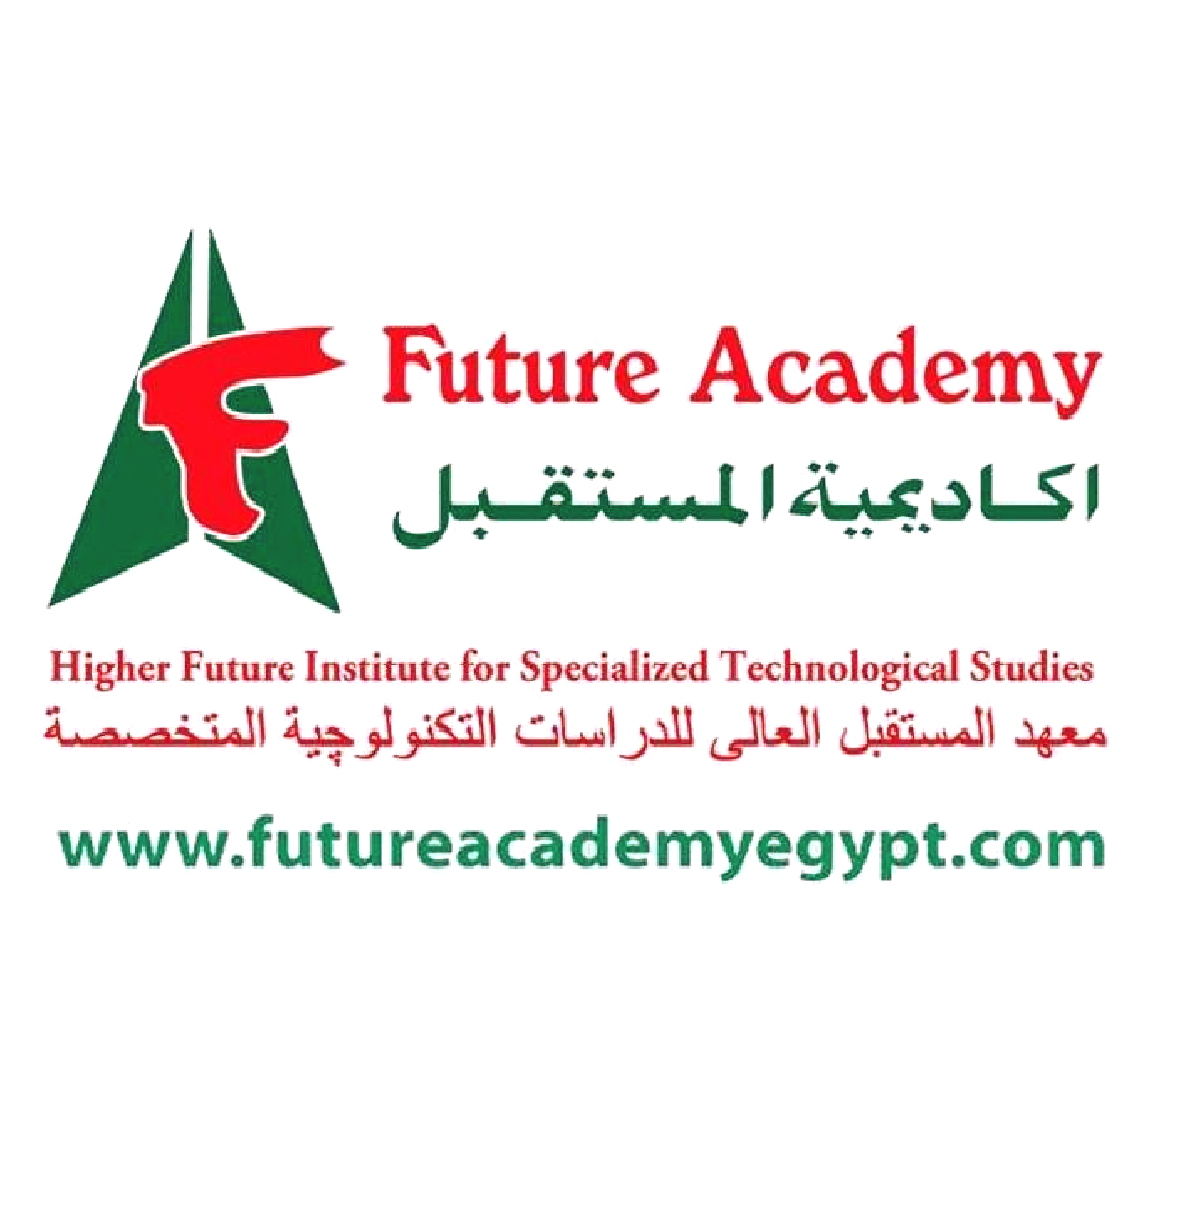 معهد المستقبل العالي للدراسات التكنولوجية المتخصصة